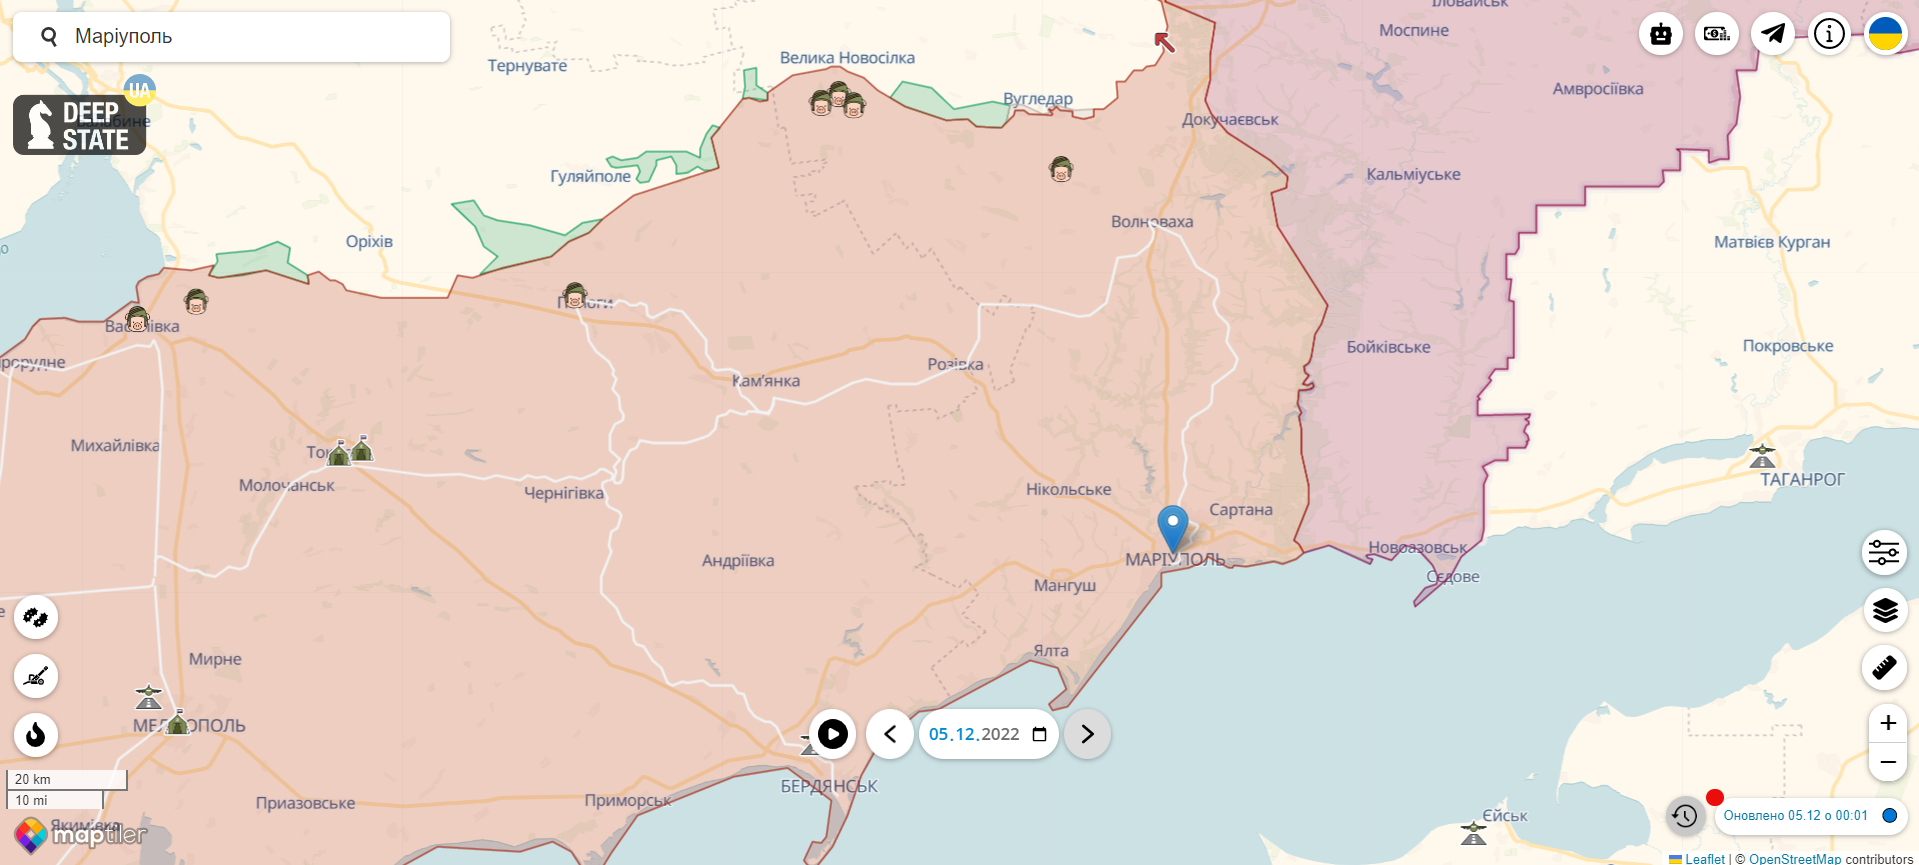 Війська РФ перетворили Маріуполь на тилову військово-логістичну базу, в місто завезли "зуби дракона", – Андрющенко 